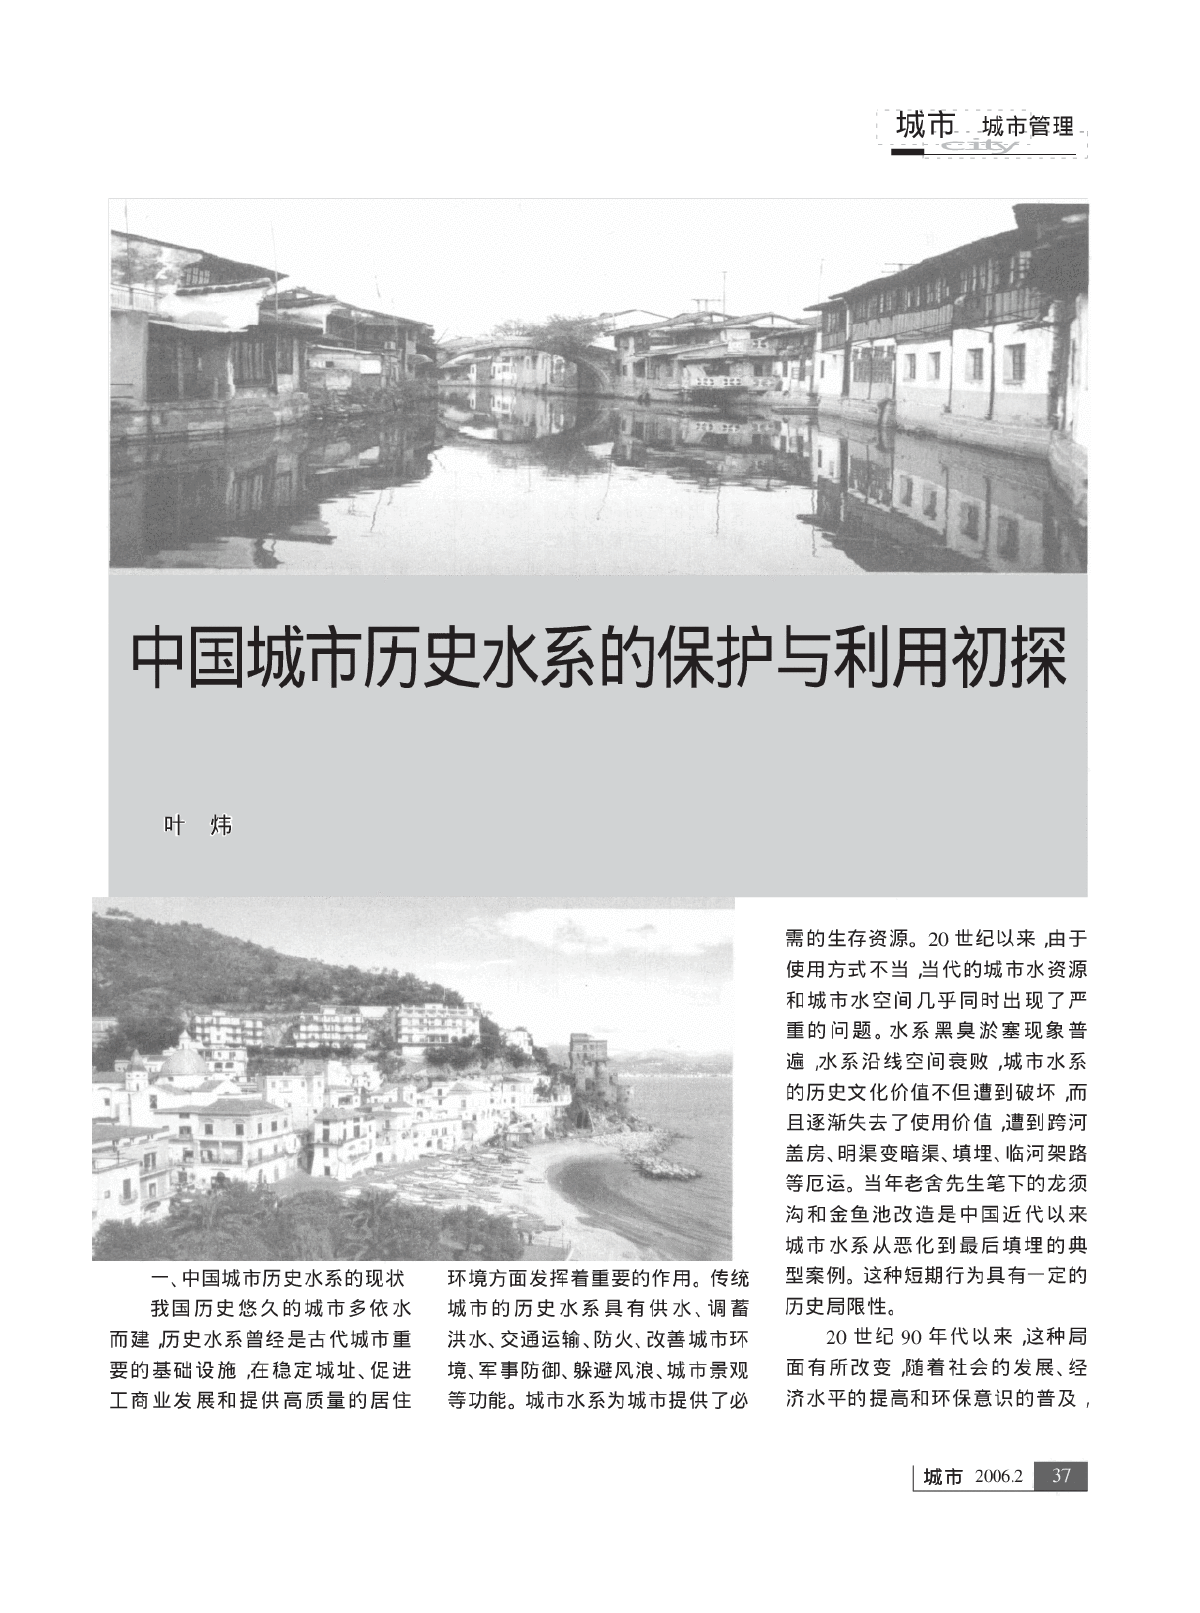 中国城市历史水系的保护与利用初探